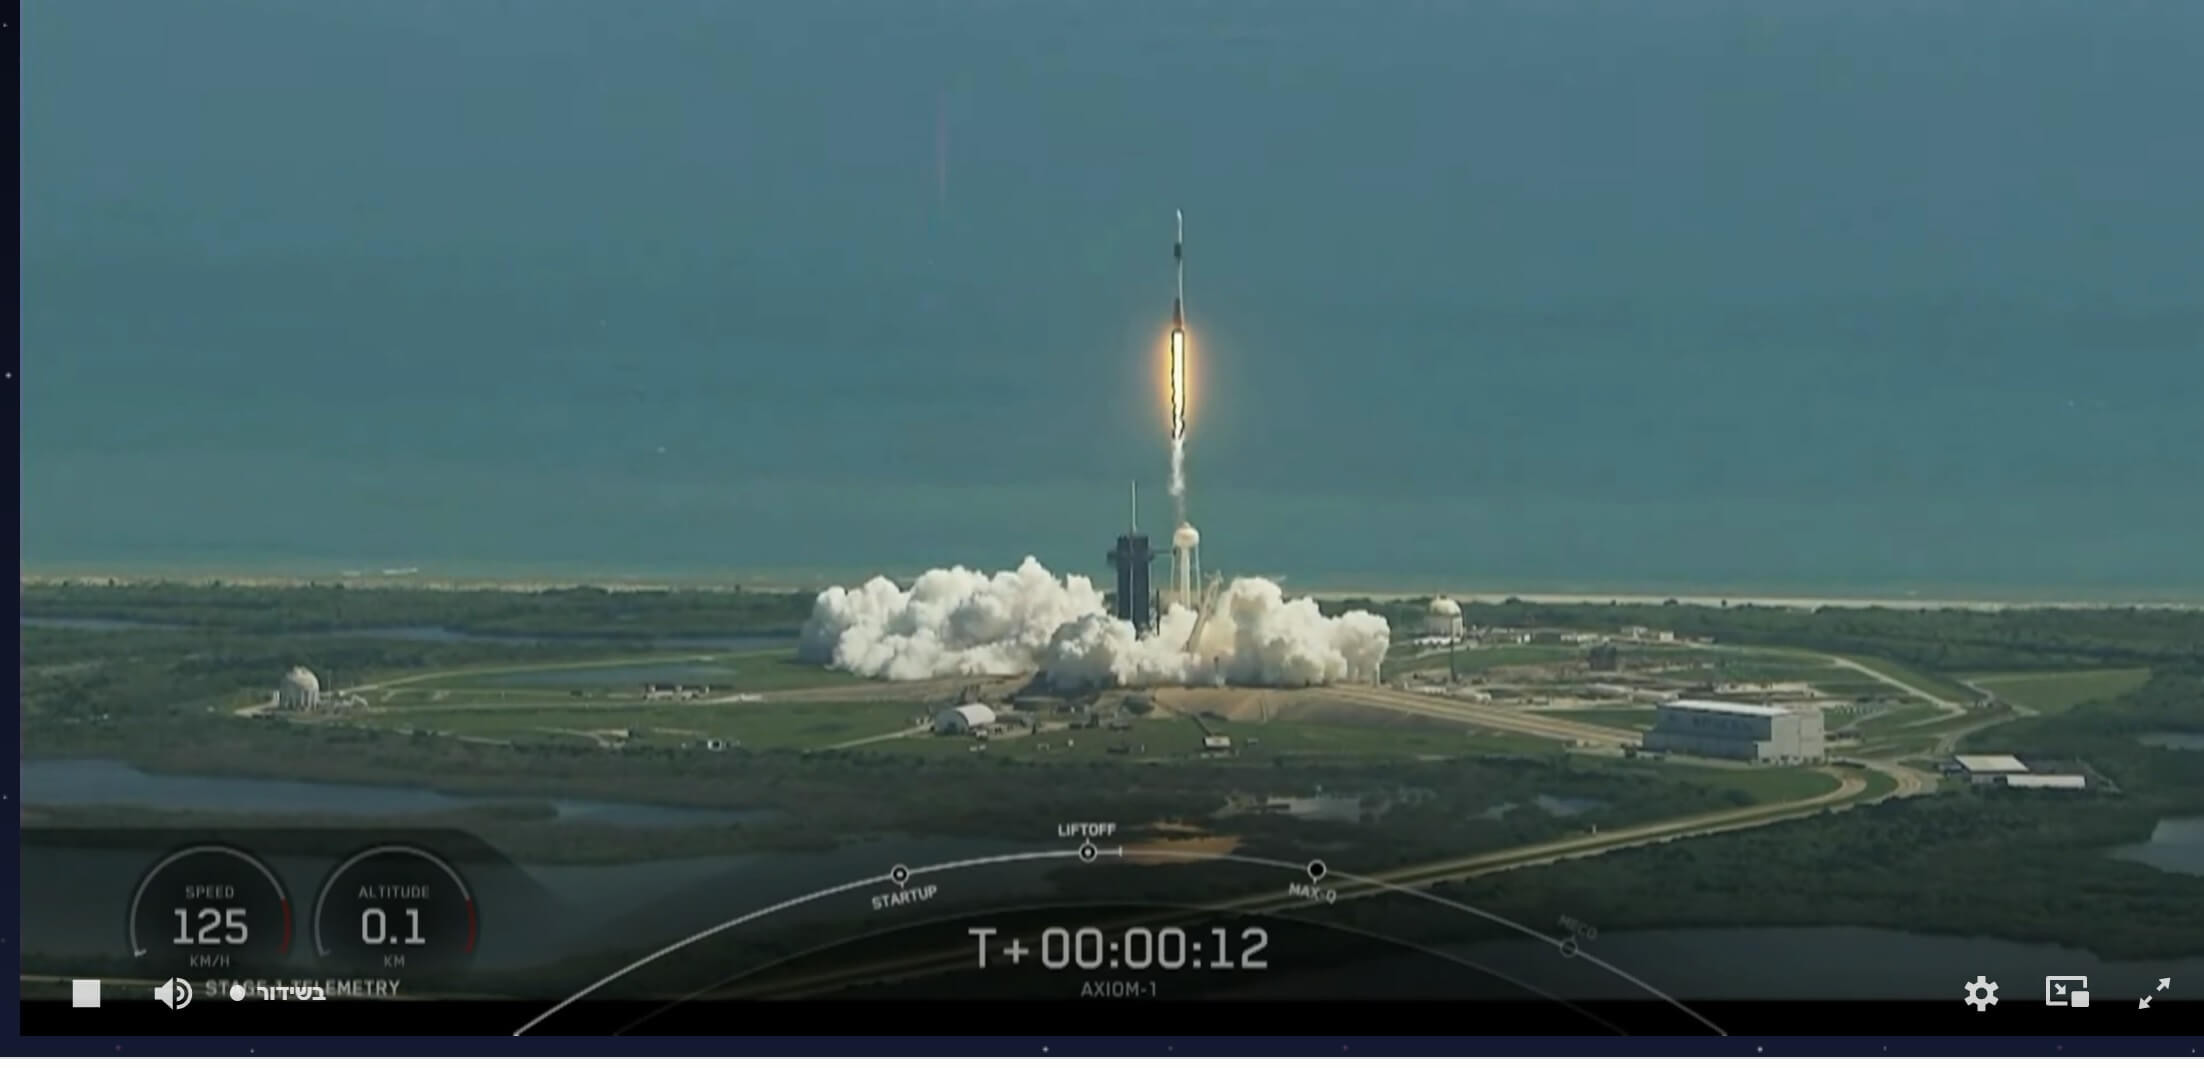 إطلاق طاقم المركبة الفضائية Endeavour Dragon على منصة إطلاق Falcon 9 للمهمة الخاصة AX-1 والتي يشارك فيها أيضاً الإسرائيلي إيتان ستيفا. لقطة شاشة من بث اكسيوم